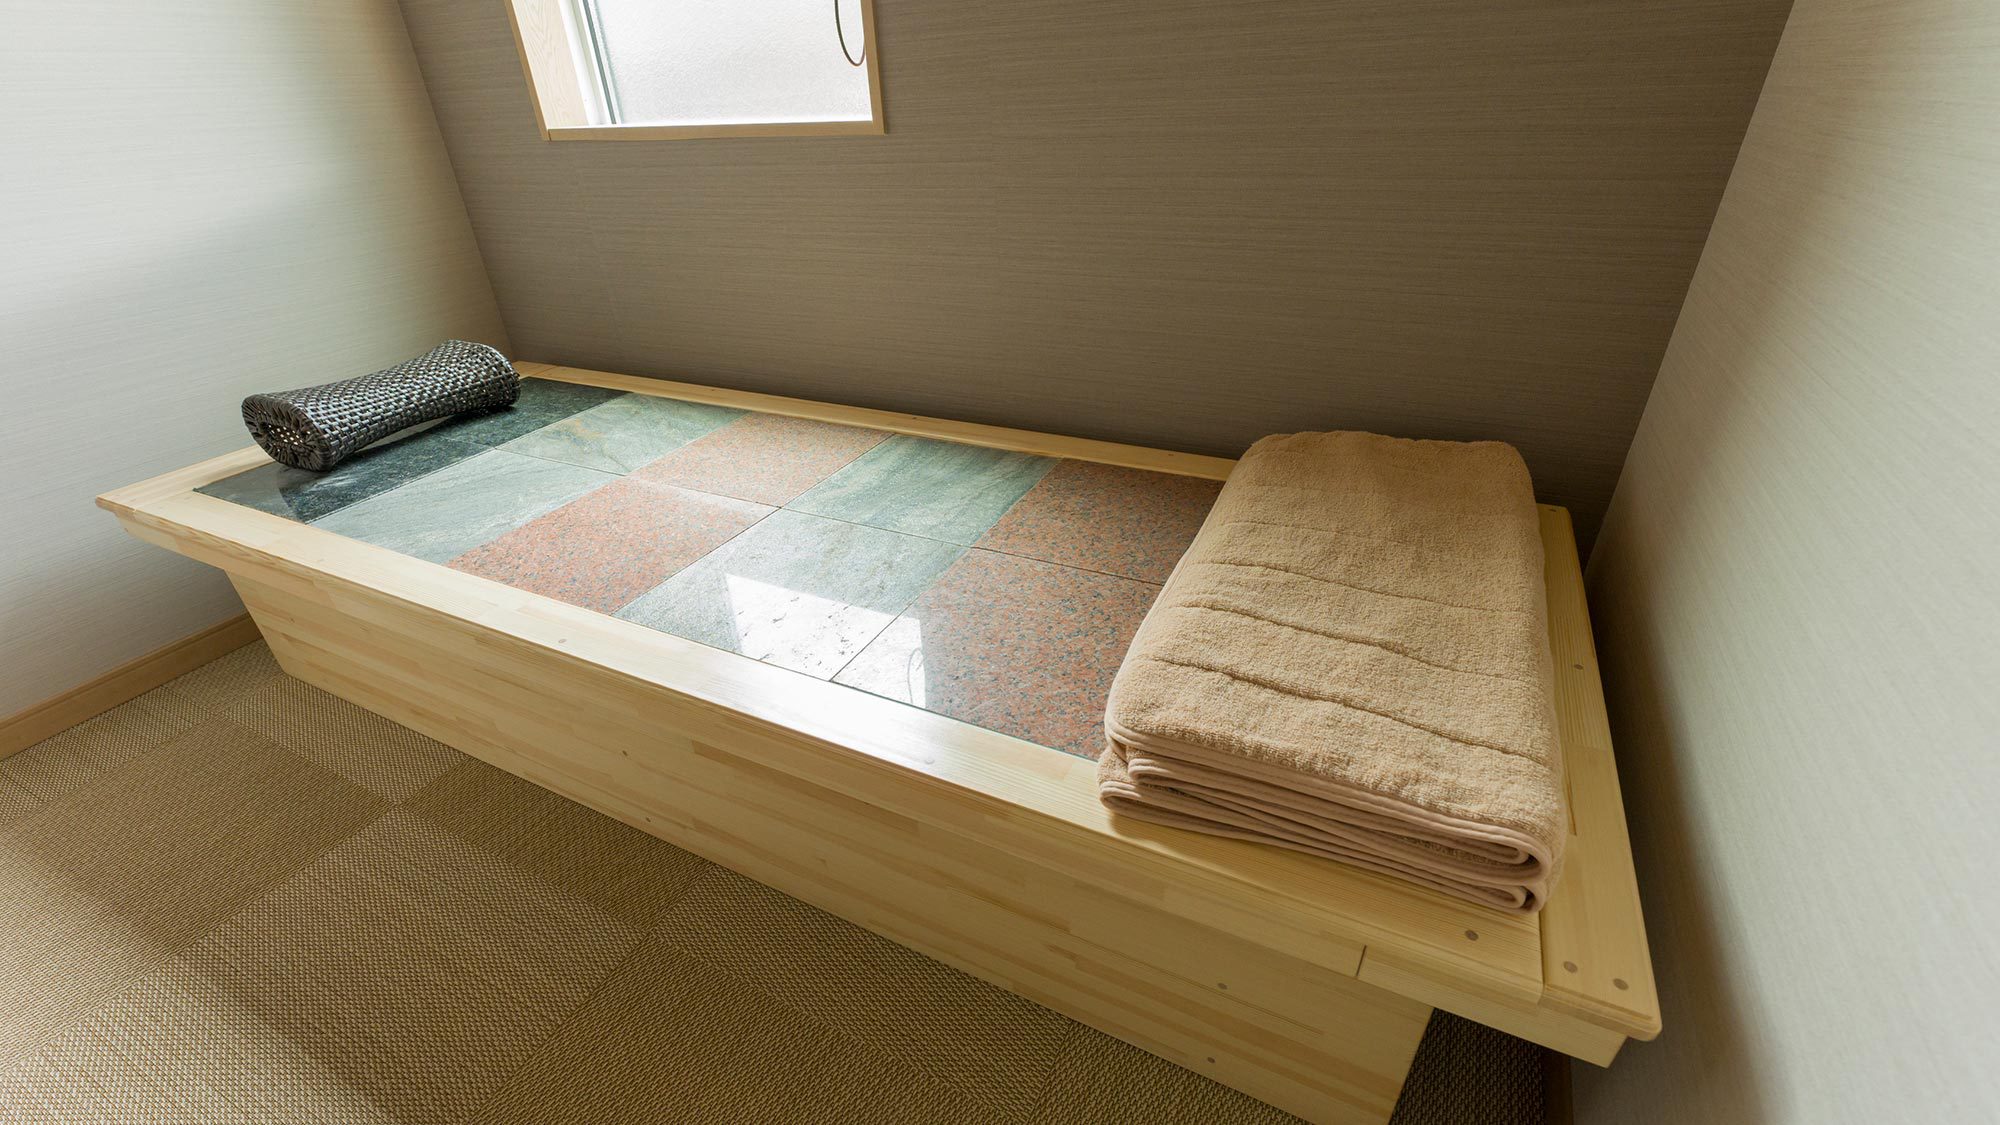 【岩盤浴ベッド】客室専用のドライタイプ岩盤浴ベッドを1台ご用意。